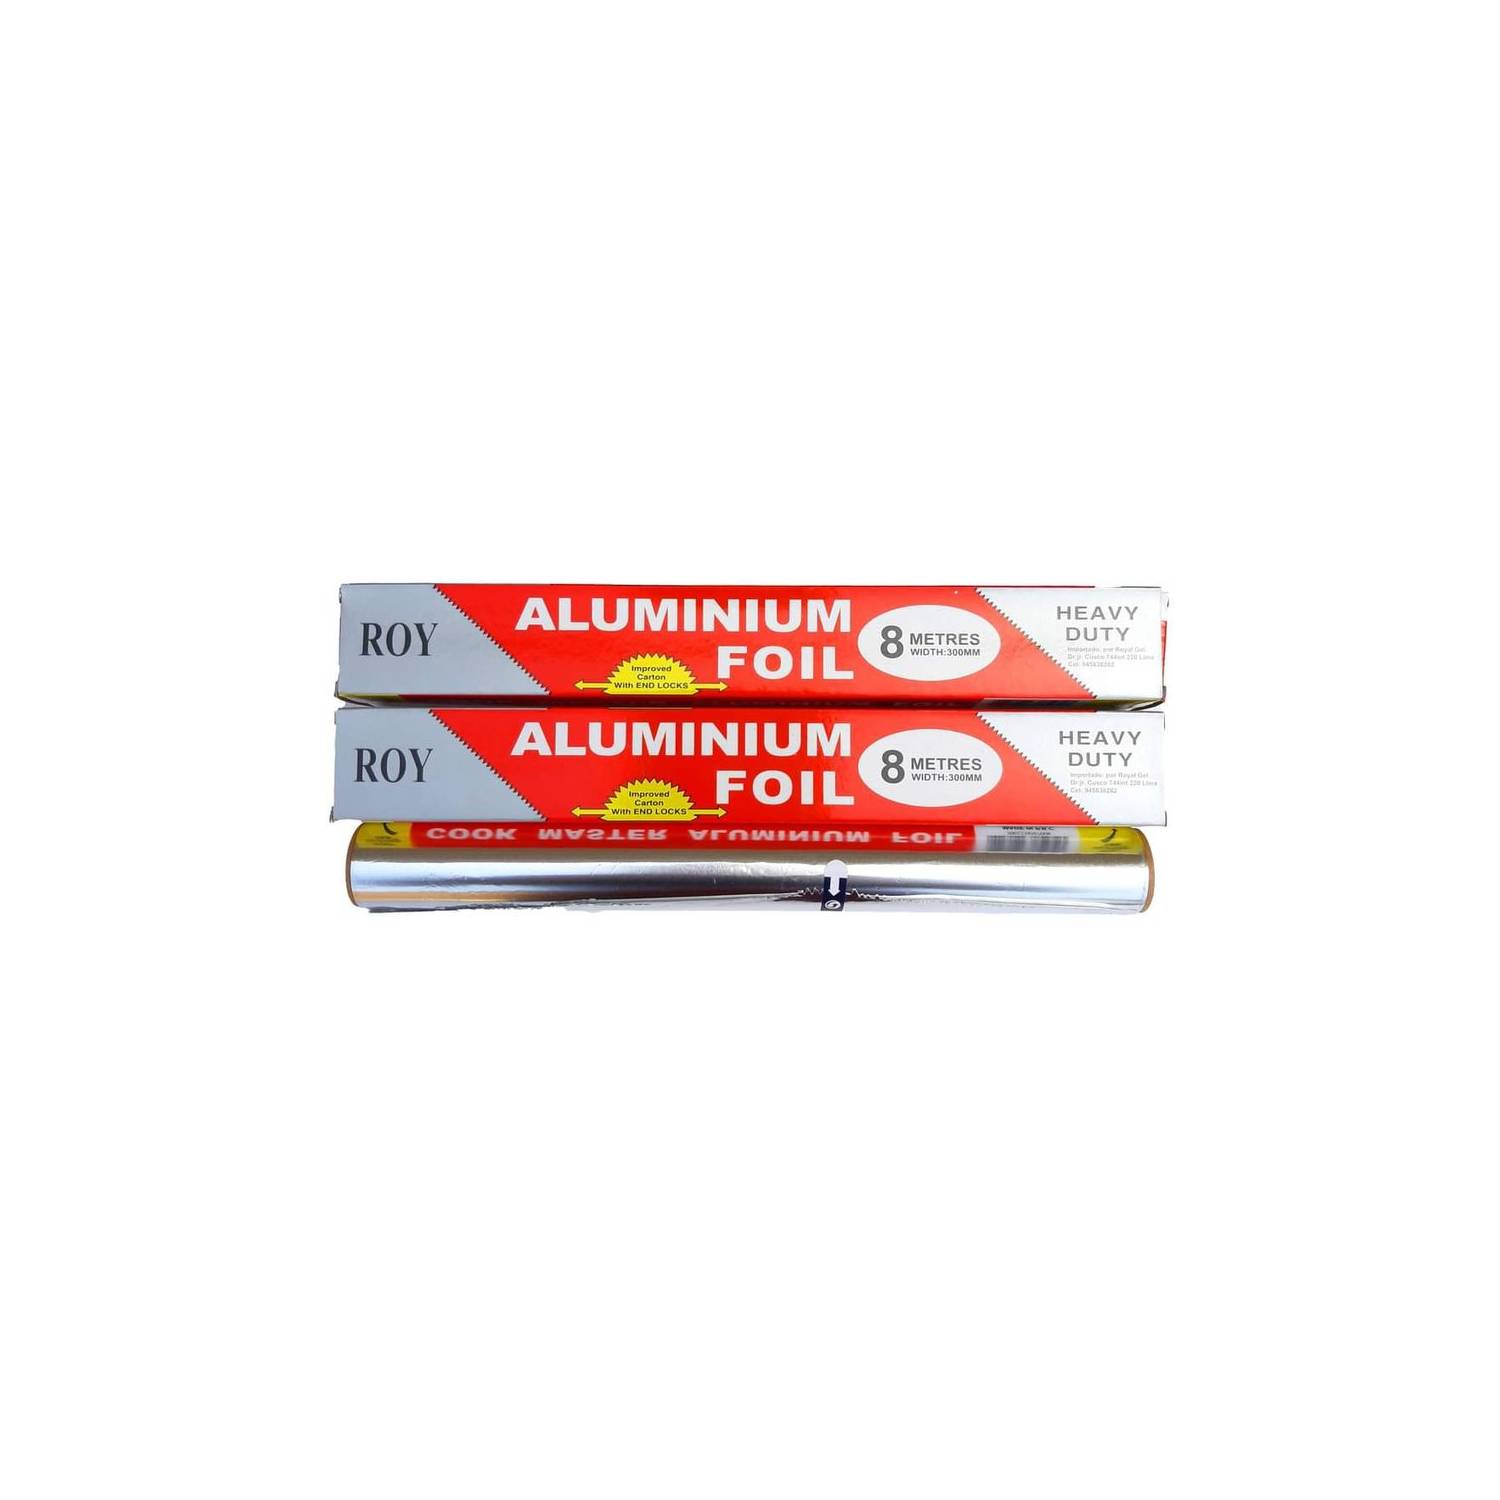 Papel Aluminio de Cocina de 8 Metros